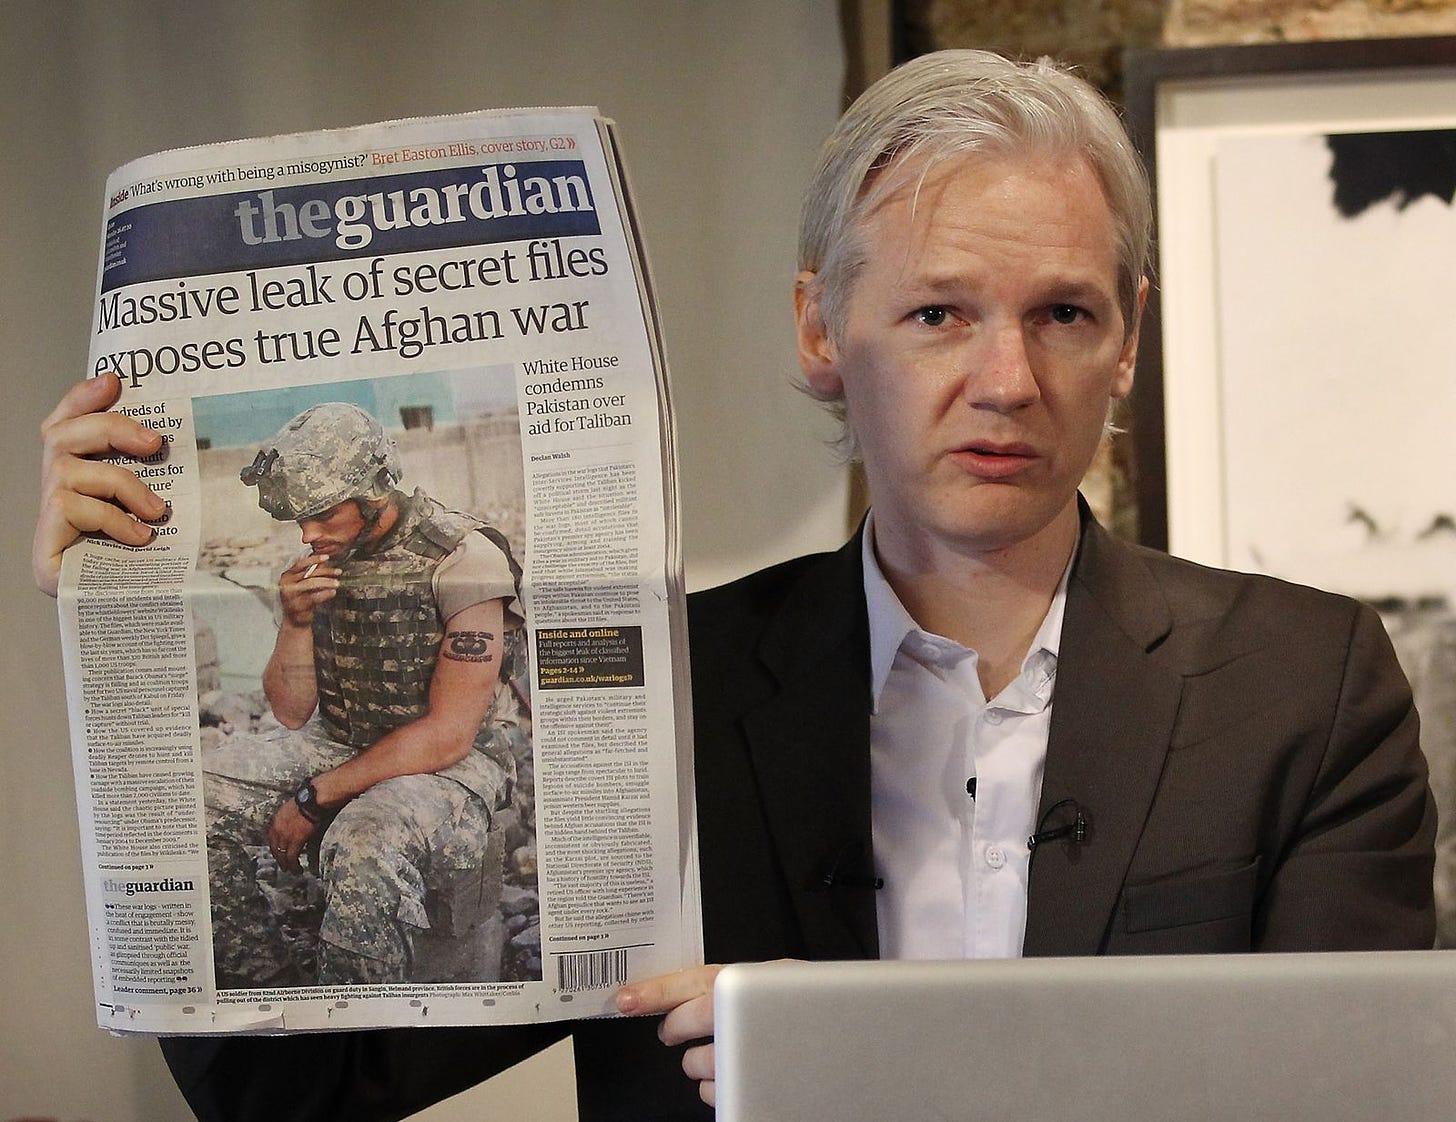 Julian Assange | Biography & Facts | Britannica